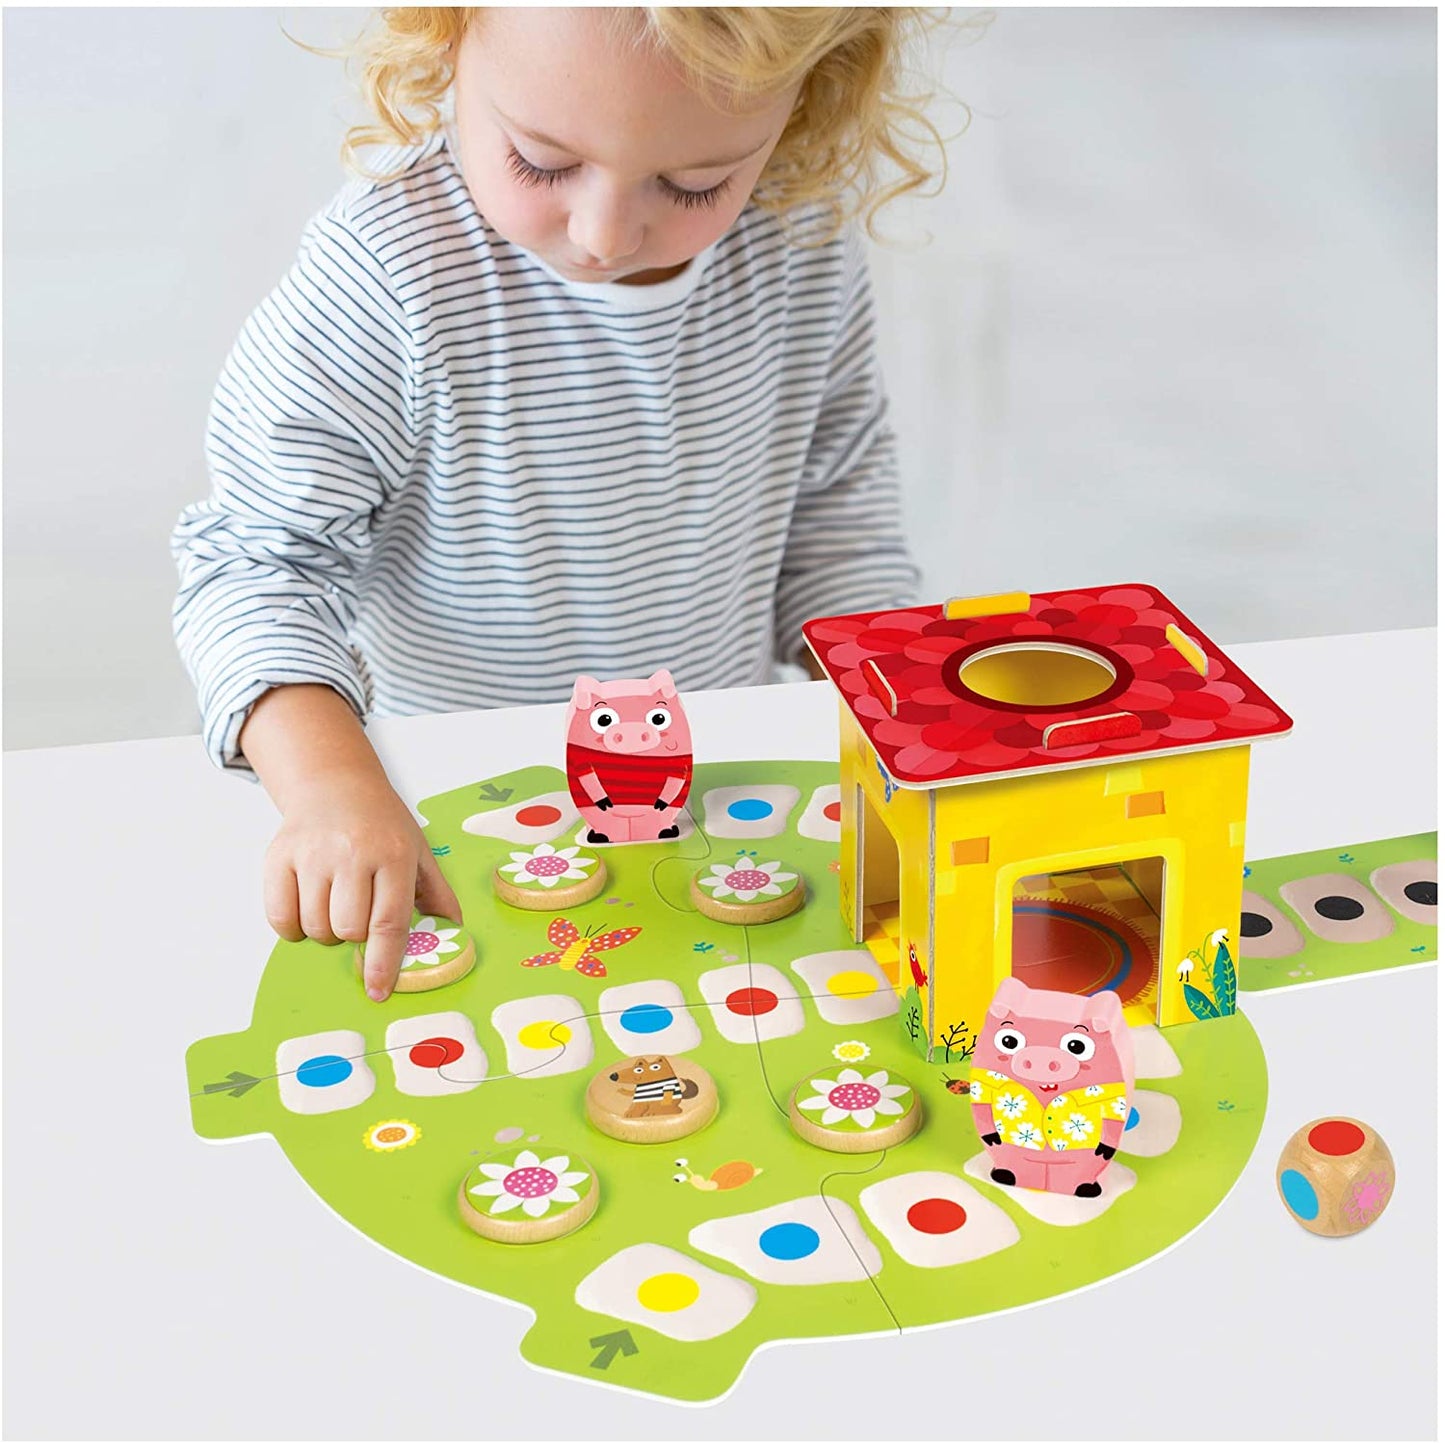 Galt Toys - Jogo de tabuleiro para crianças, maiores de 3 anos, 1-4 jogadores